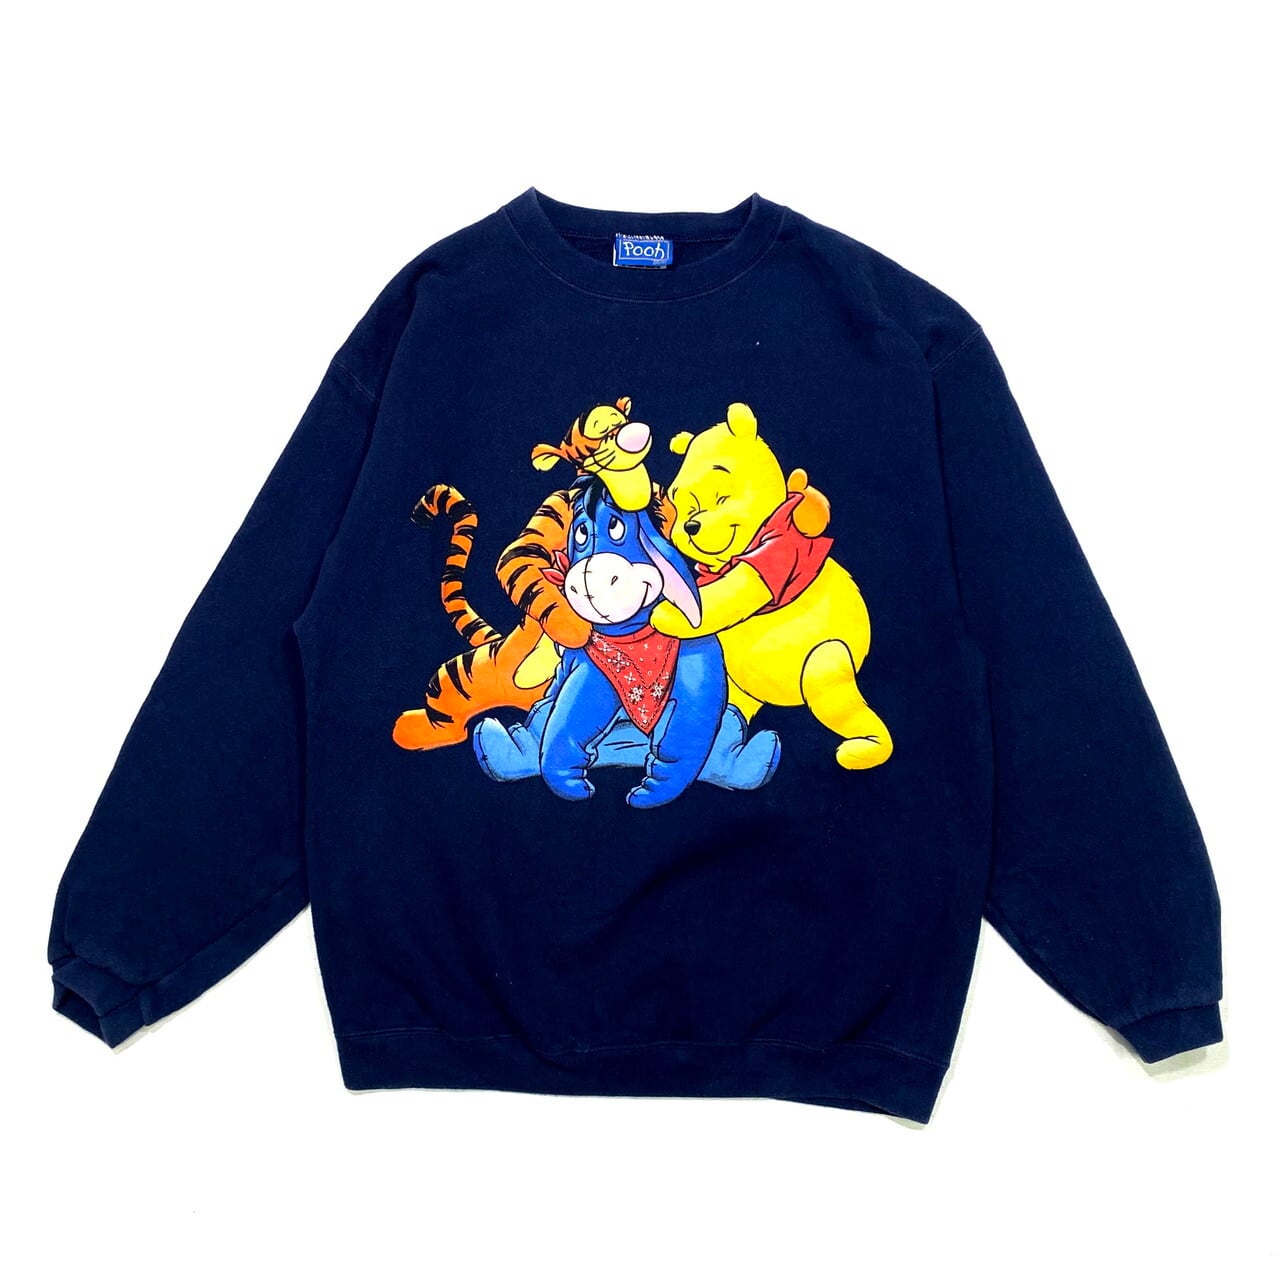 90年代 Tultex Pooh ディズニー くまのプーさん スウェットシャツ M メンズ レディース 古着 90s ビンテージ ヴィンテージ Disney キャラクター トレーナー 紺色 ネイビー スウェット Swe30 Sa24 Cave 古着屋 公式 古着通販サイト